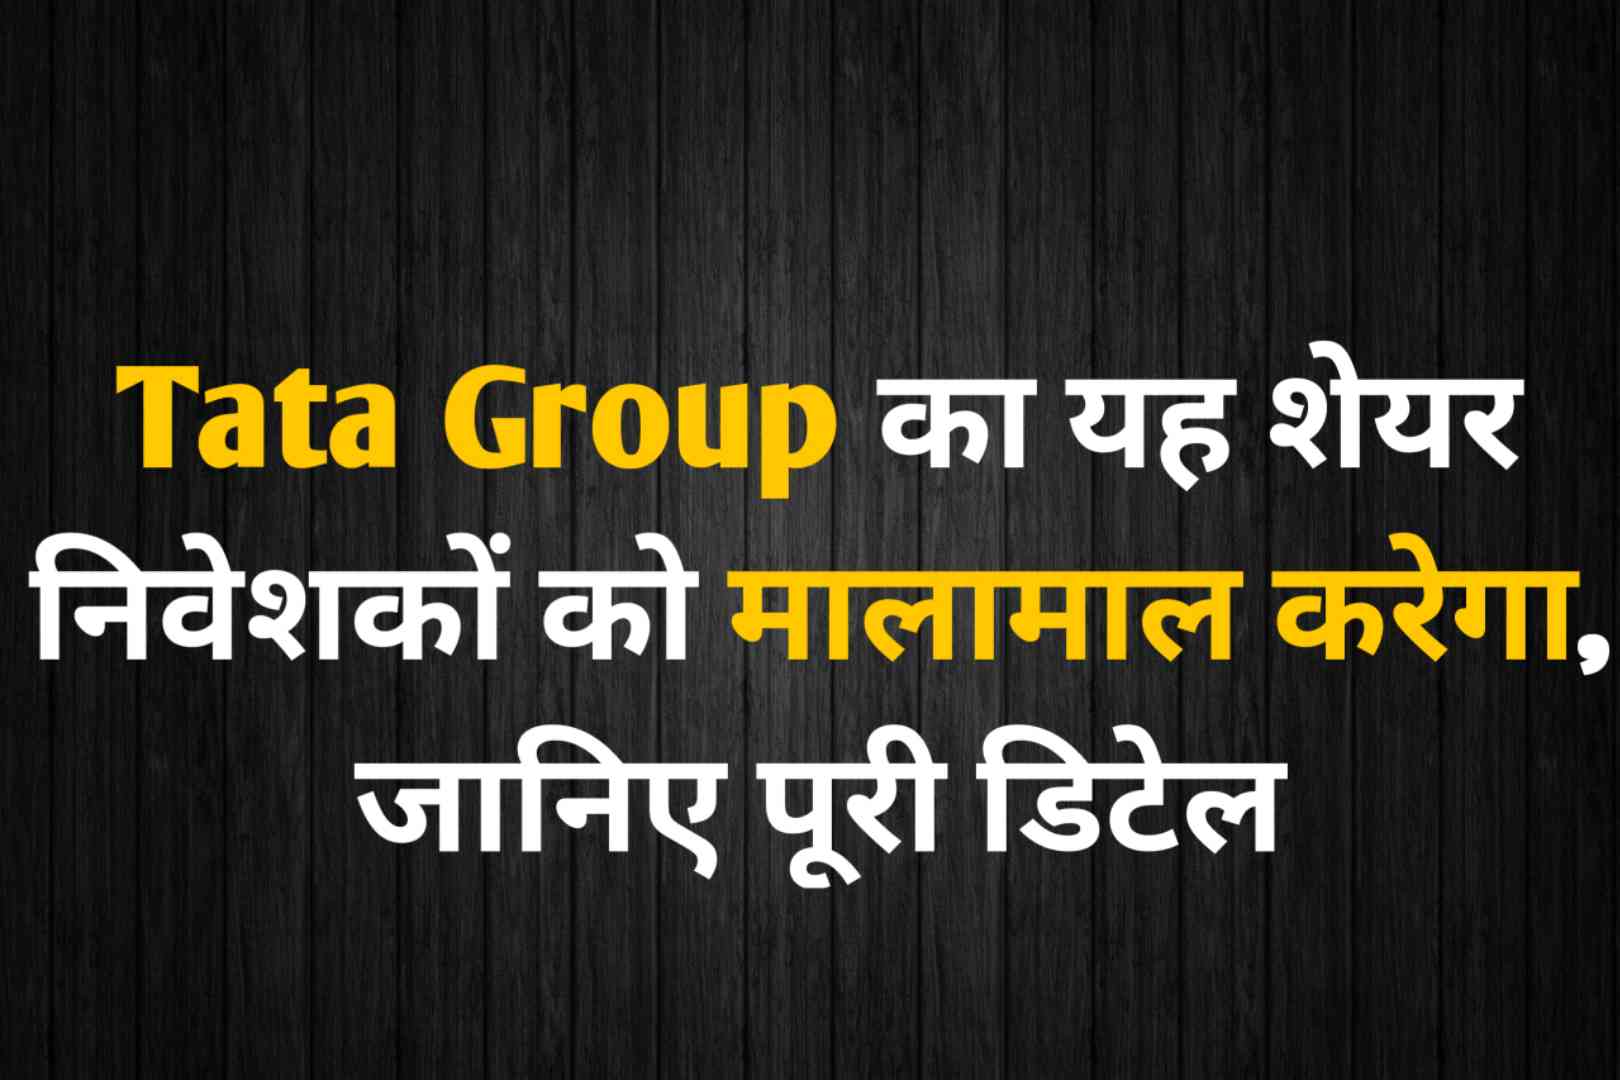 Tata Group का यह शेयर निवेशकों को मालामाल करेगा, जानिए पूरी डिटेल